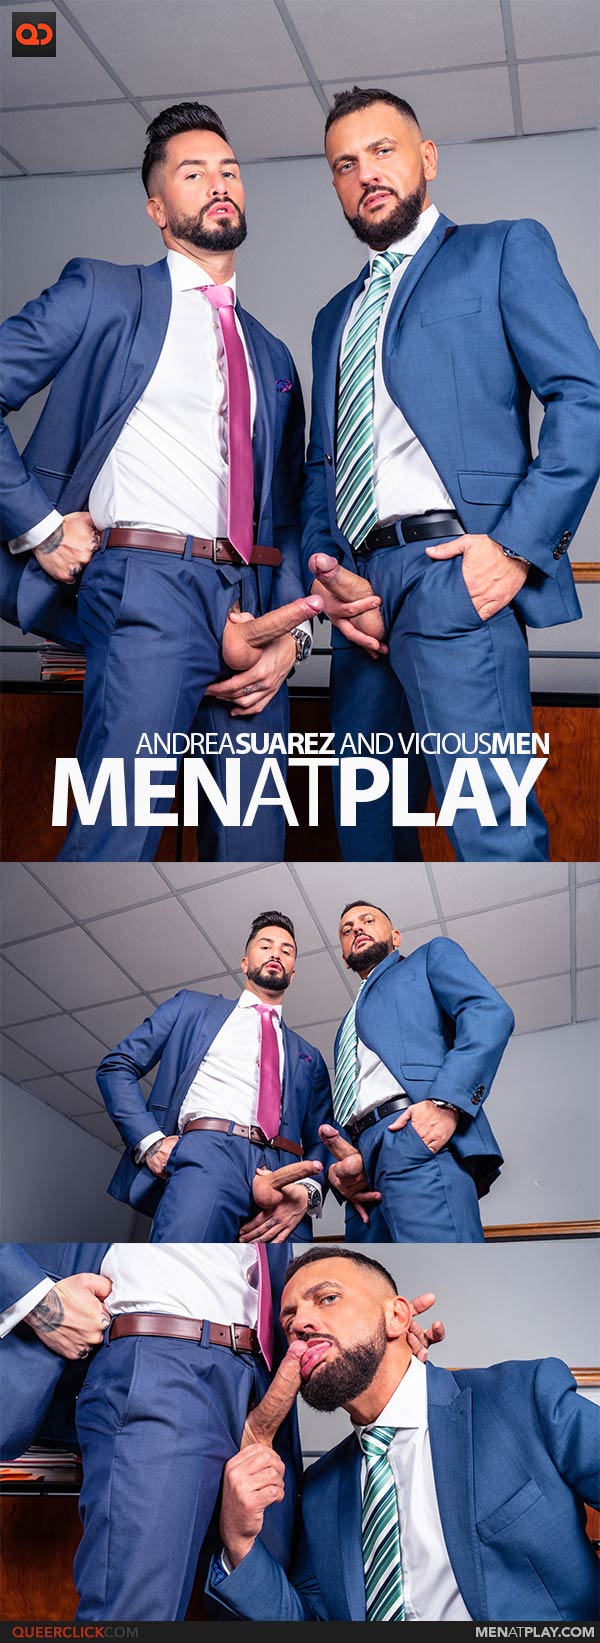 MenAtPlay: Andrea Suarez and Vicious Men